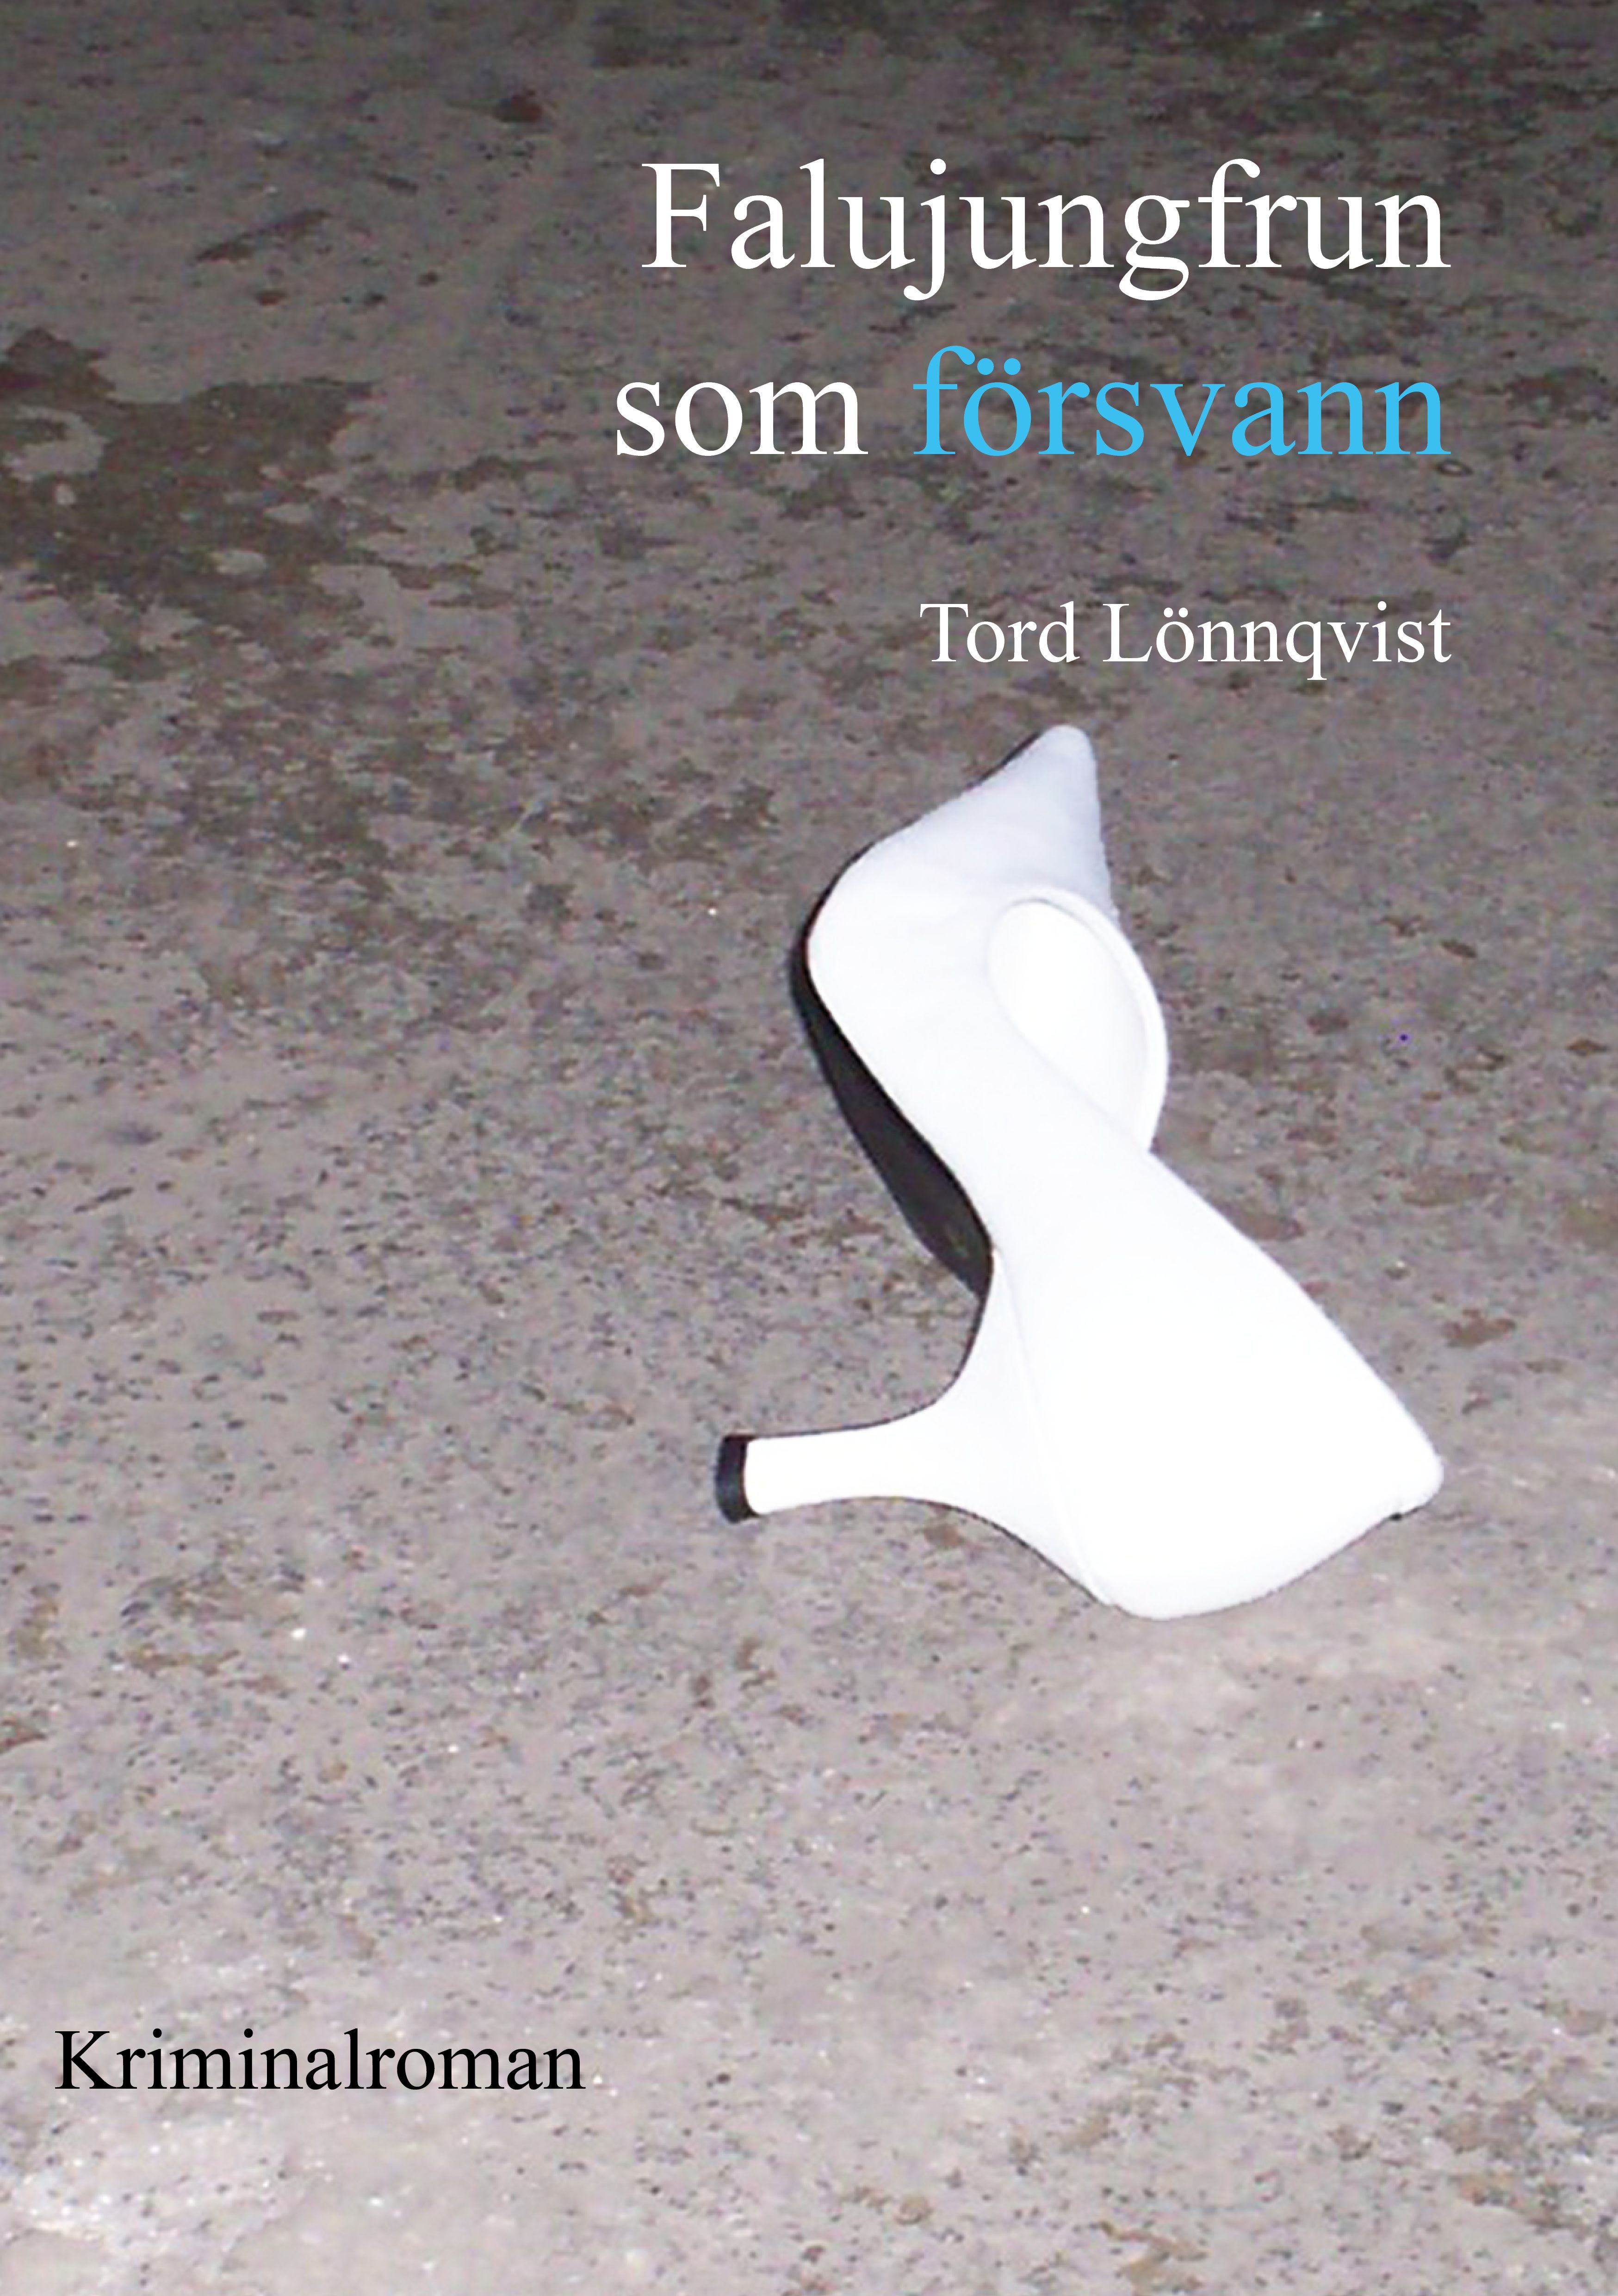 Falujungfrun som försvann, eBook by Tord Lönnqvist